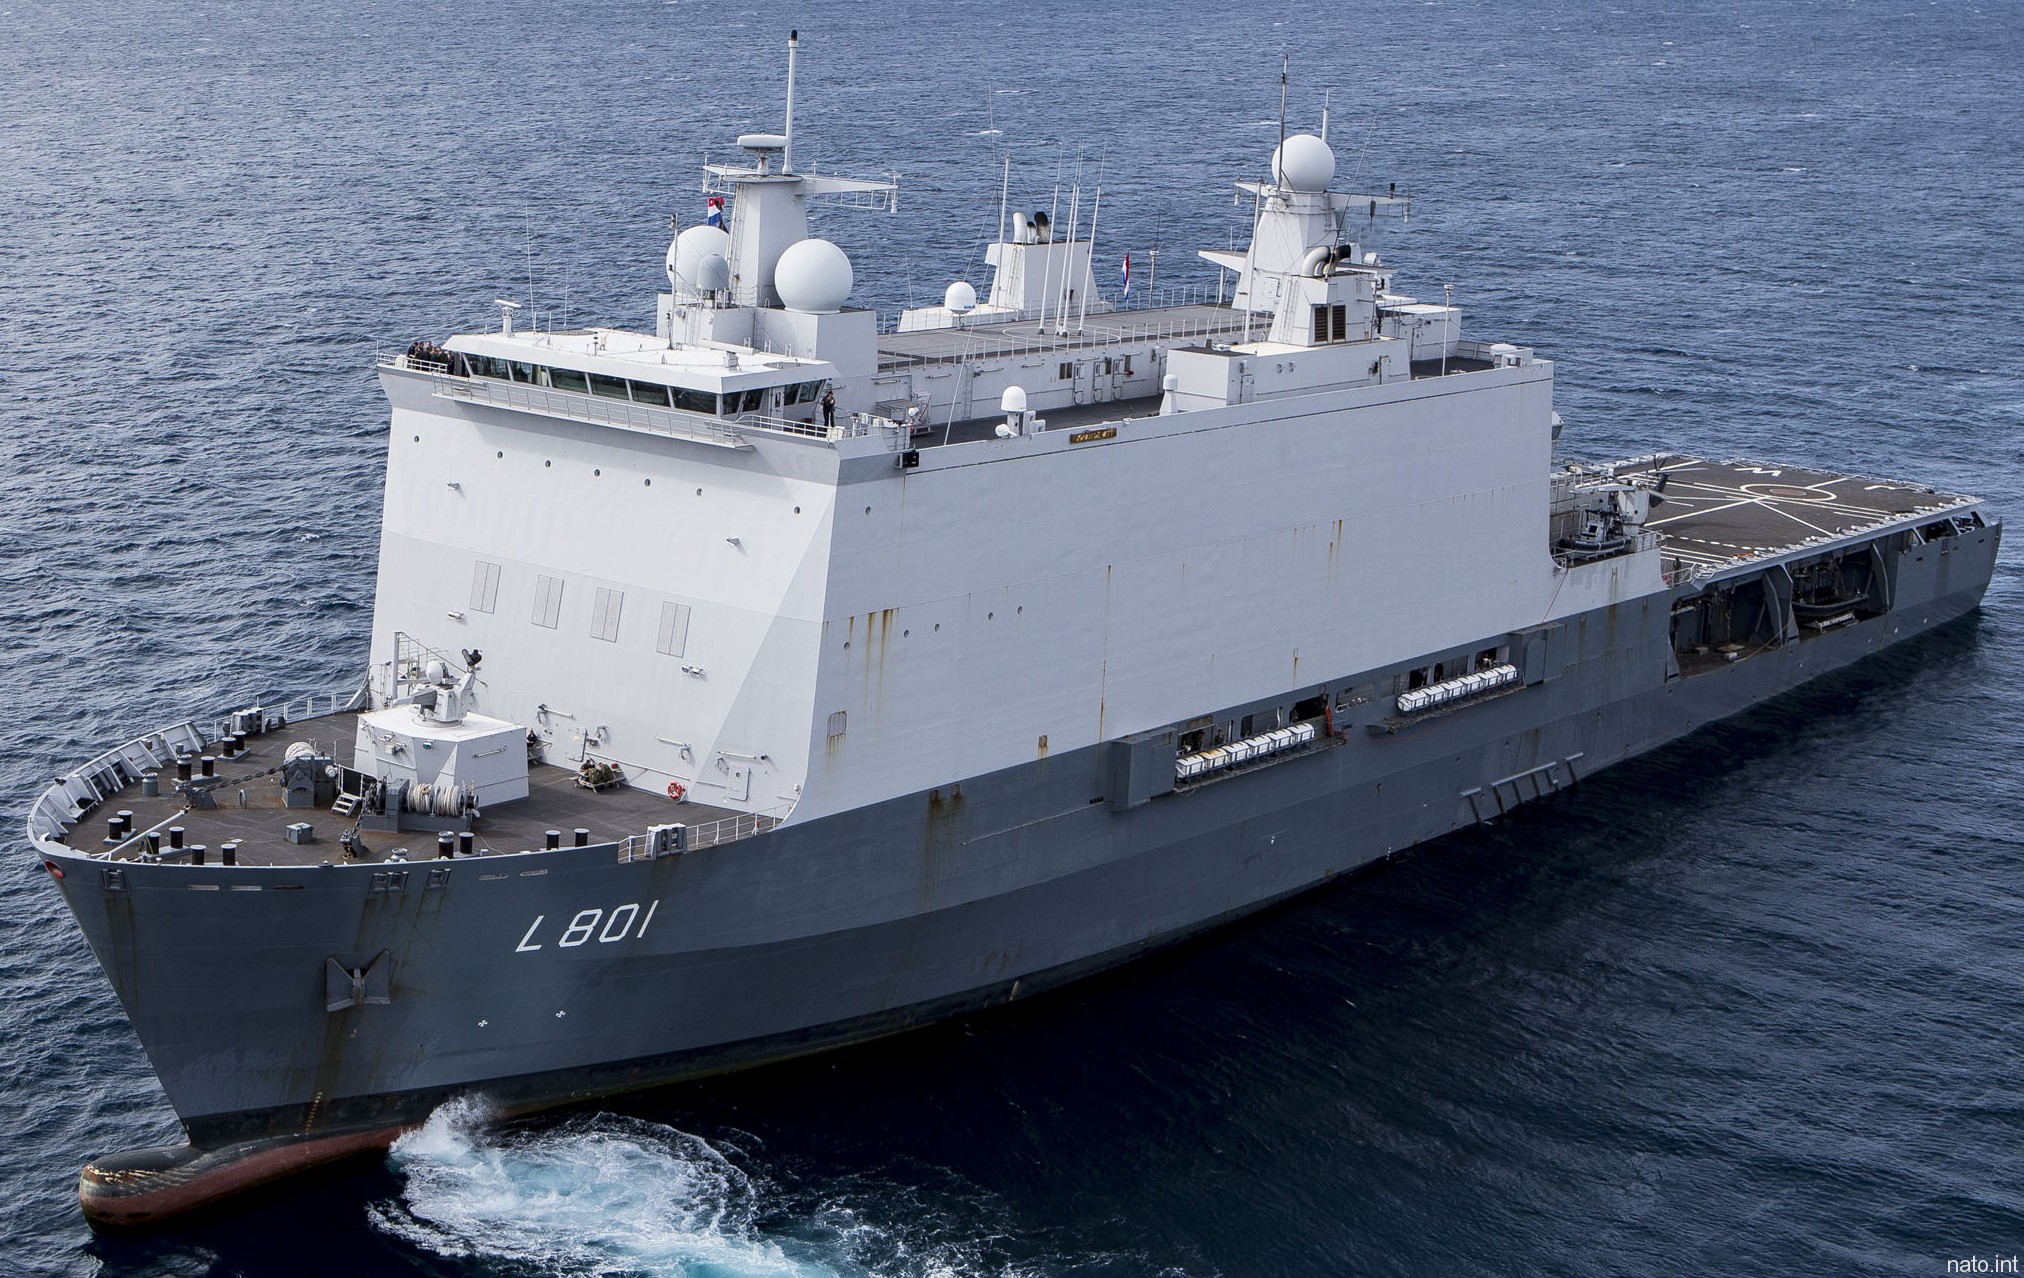 l-801 hnlms johan de witt amphibious ship landing platform dock lpd royal netherlands navy 25